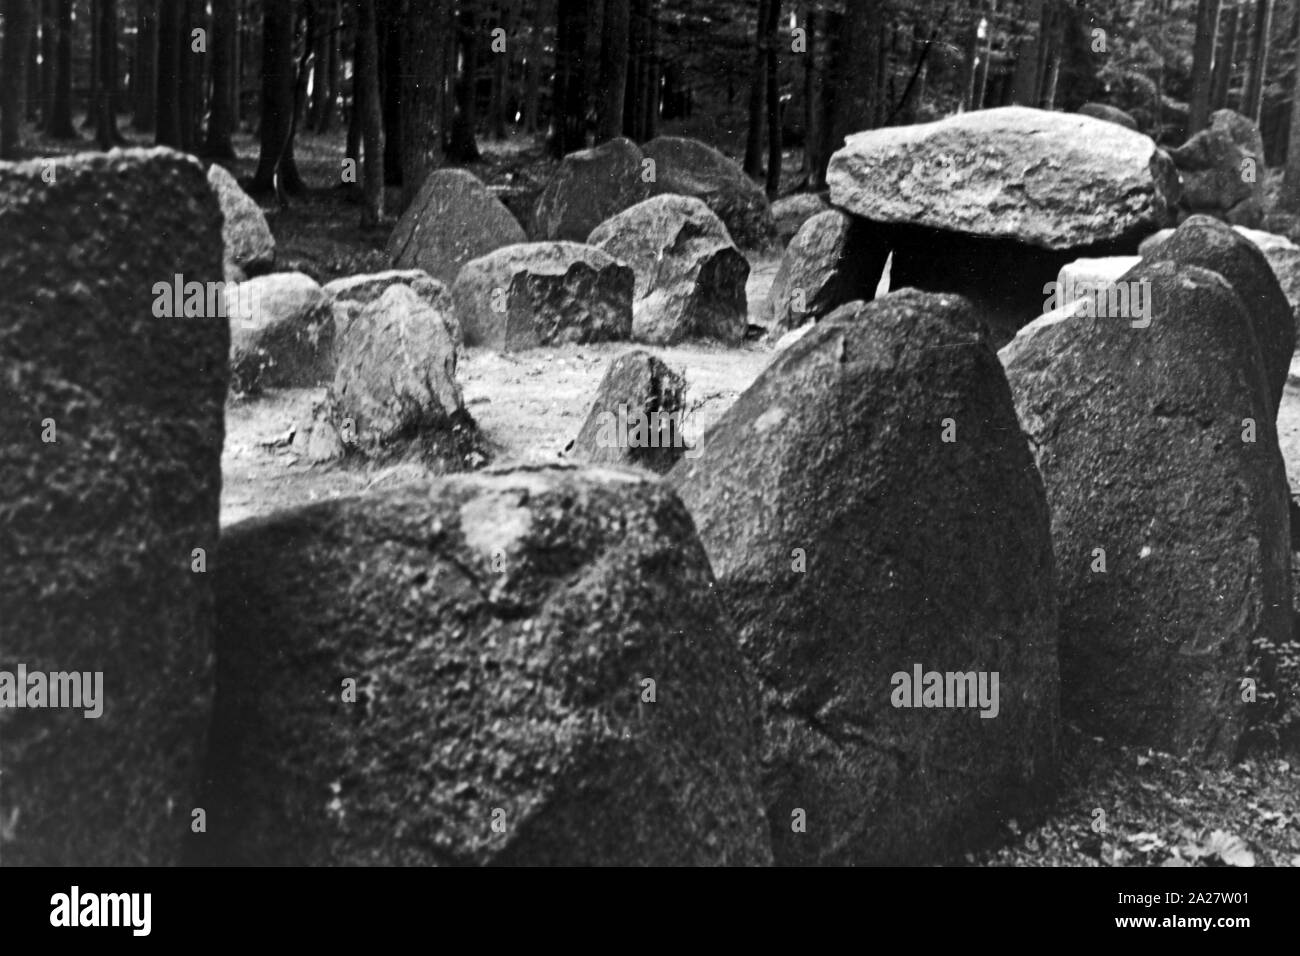 De hoogen Steener, Hünengrab bei Behrens, Niedersachsen, 1950er. De hoogen Steener, megalithischen Struktur in der Nähe von Behrens, Niedersachsen, 1950. Stockfoto